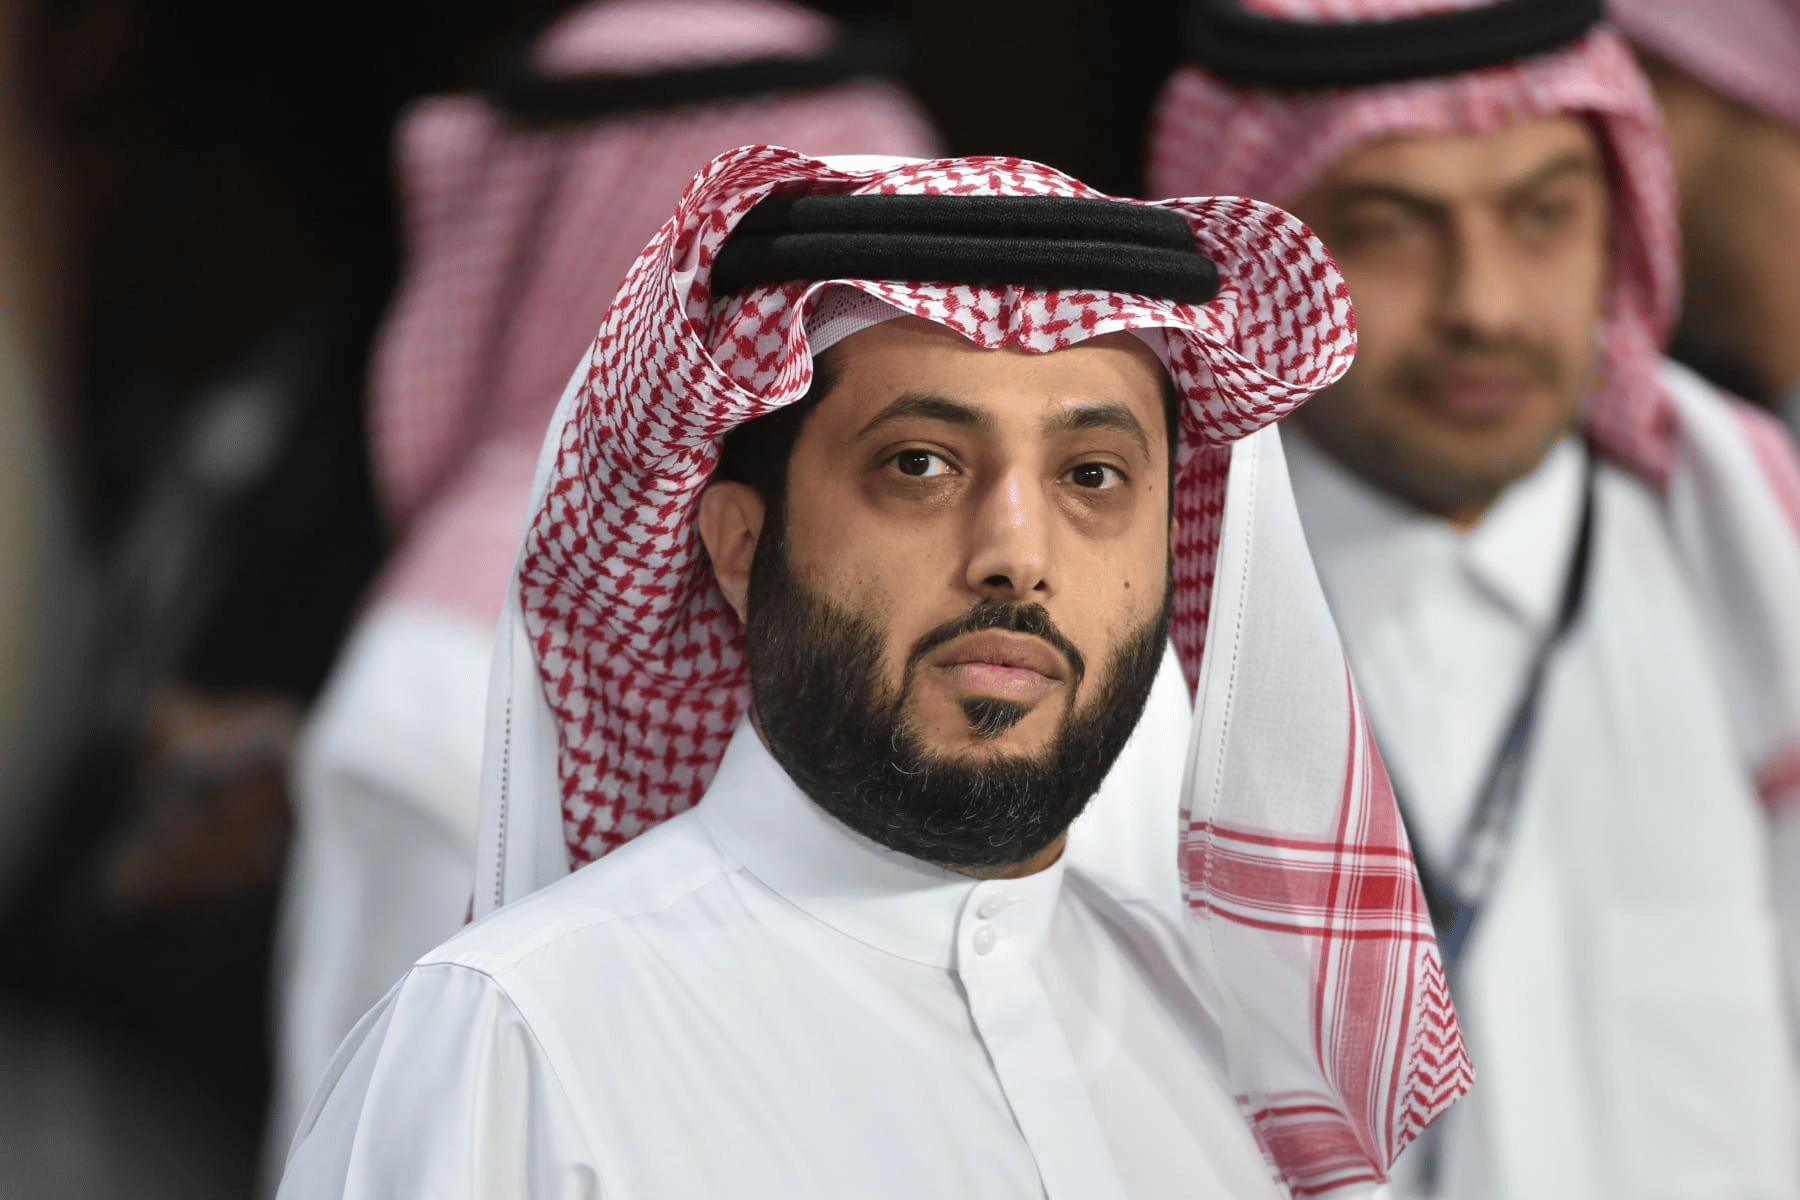 سعودي يهاجم تركي آل الشيخ watanserb.com